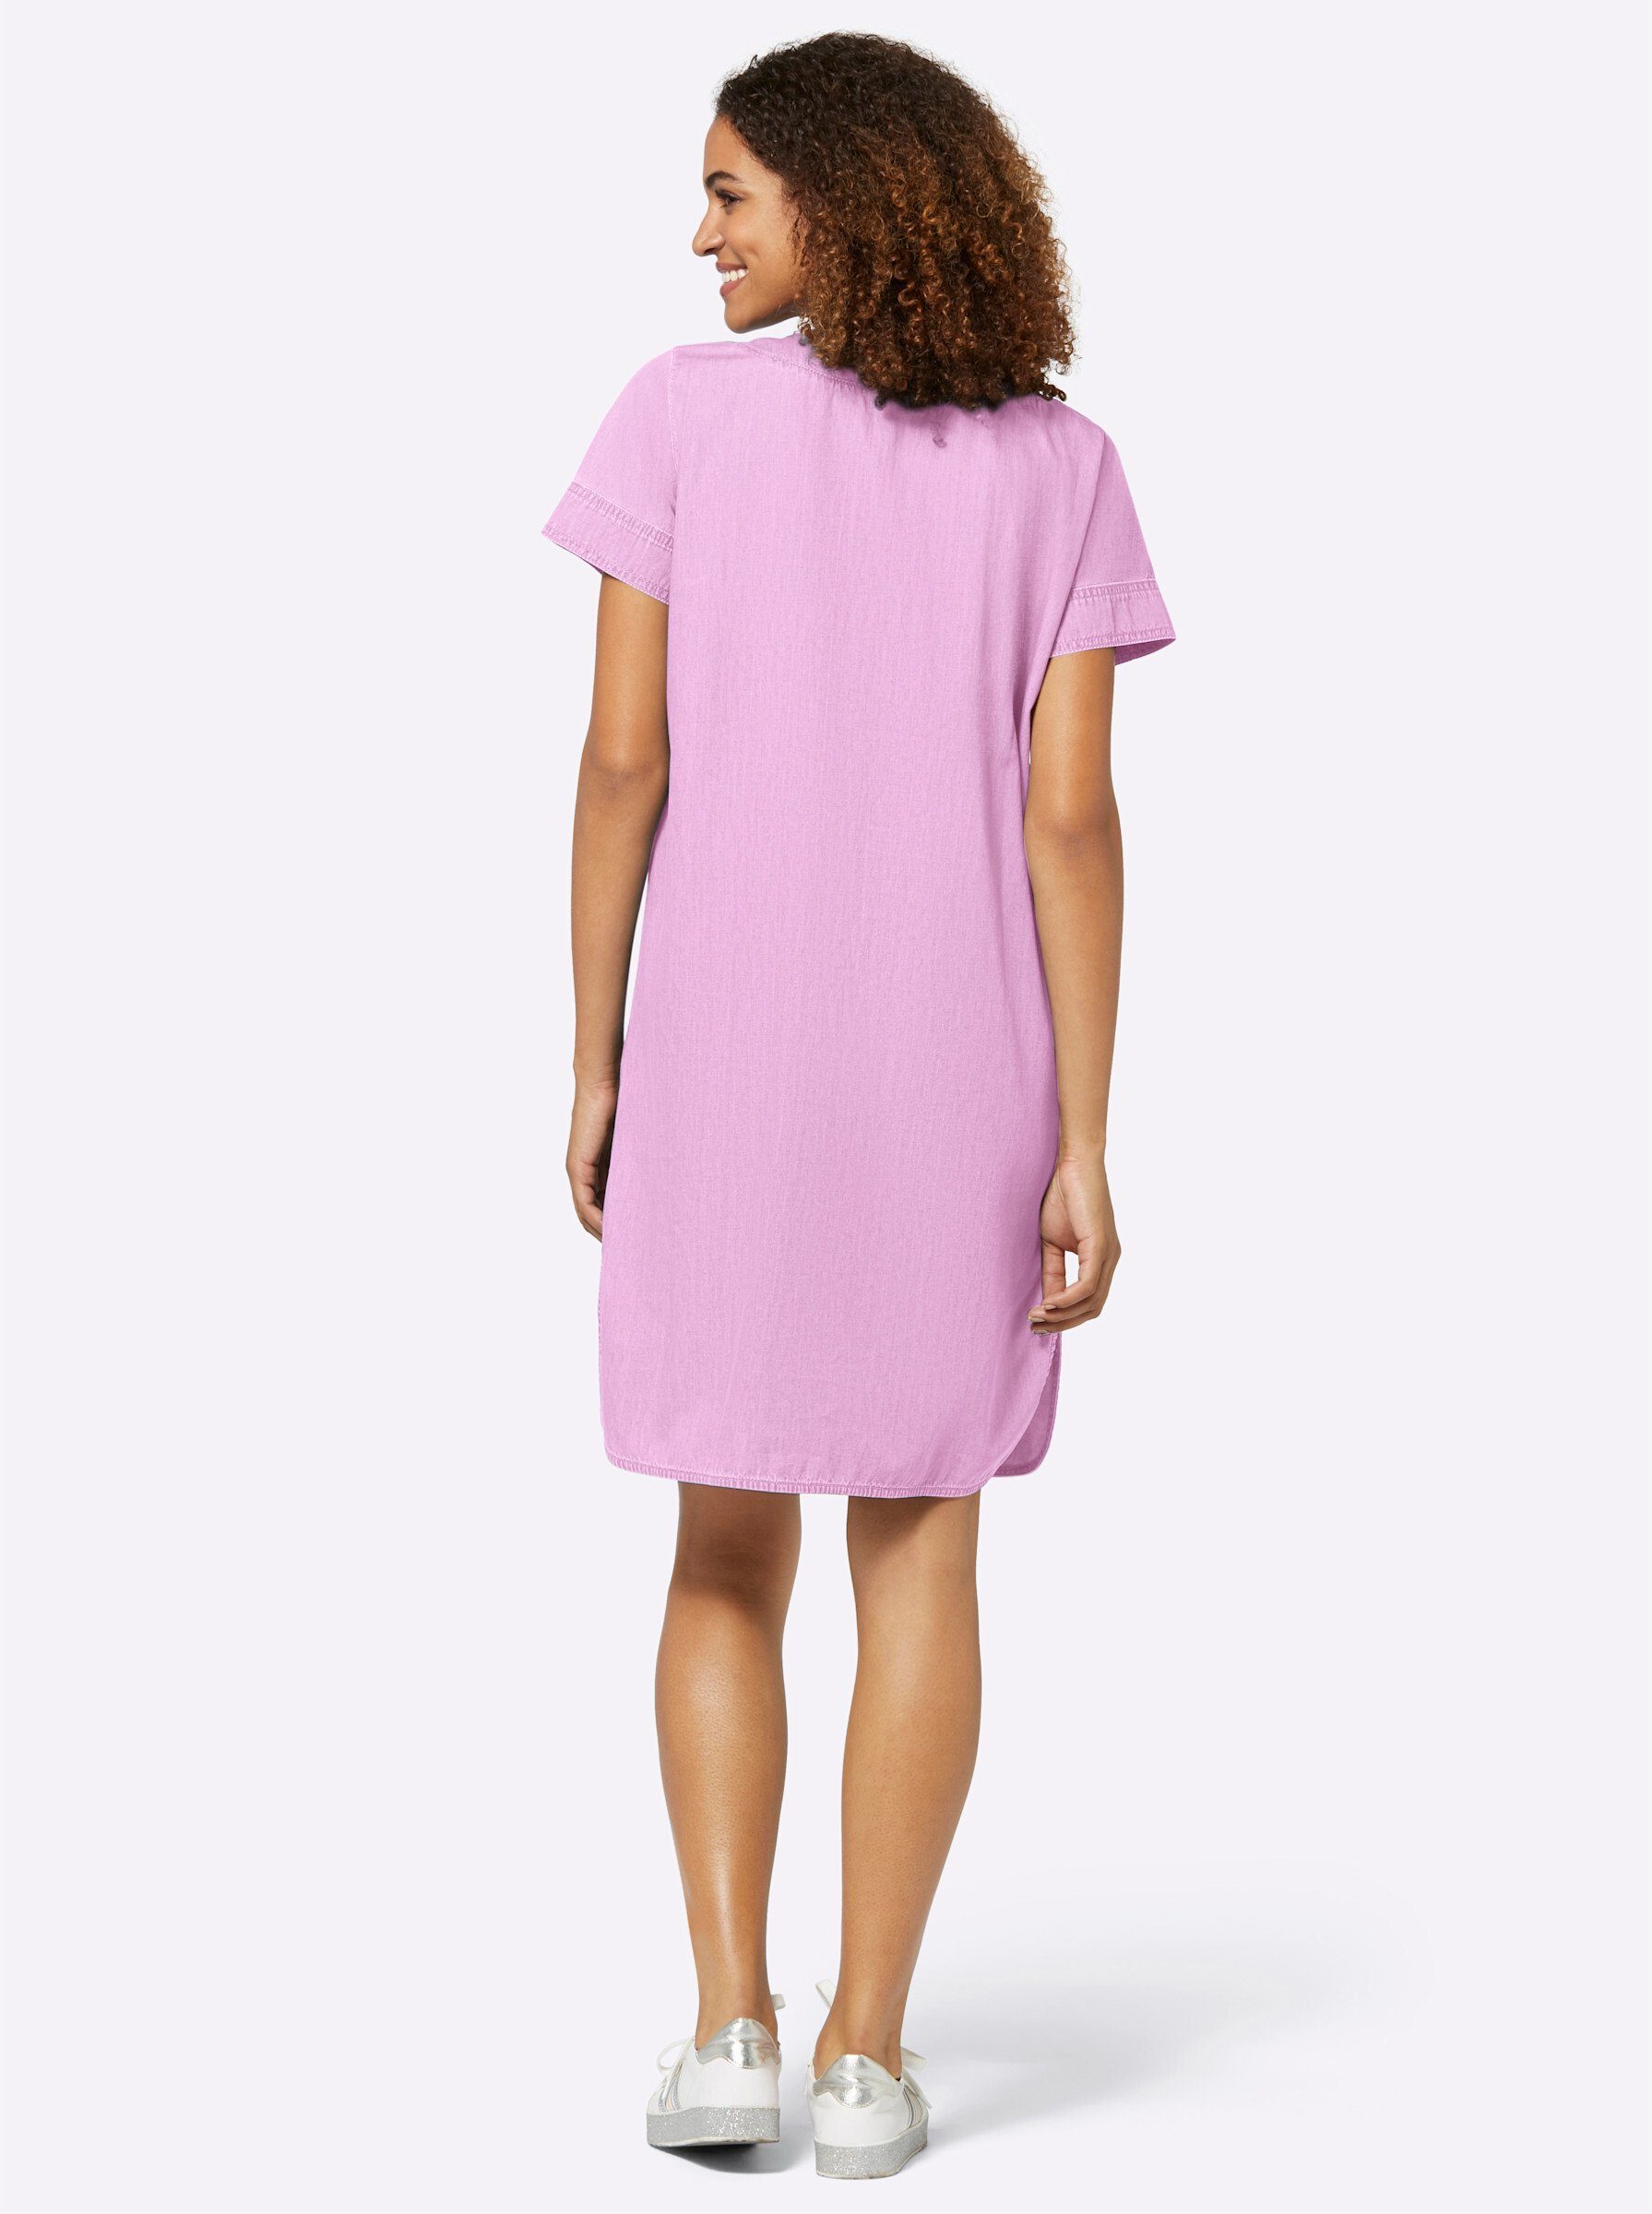 Rosa knielange Sommerkleider für Damen online kaufen | OTTO